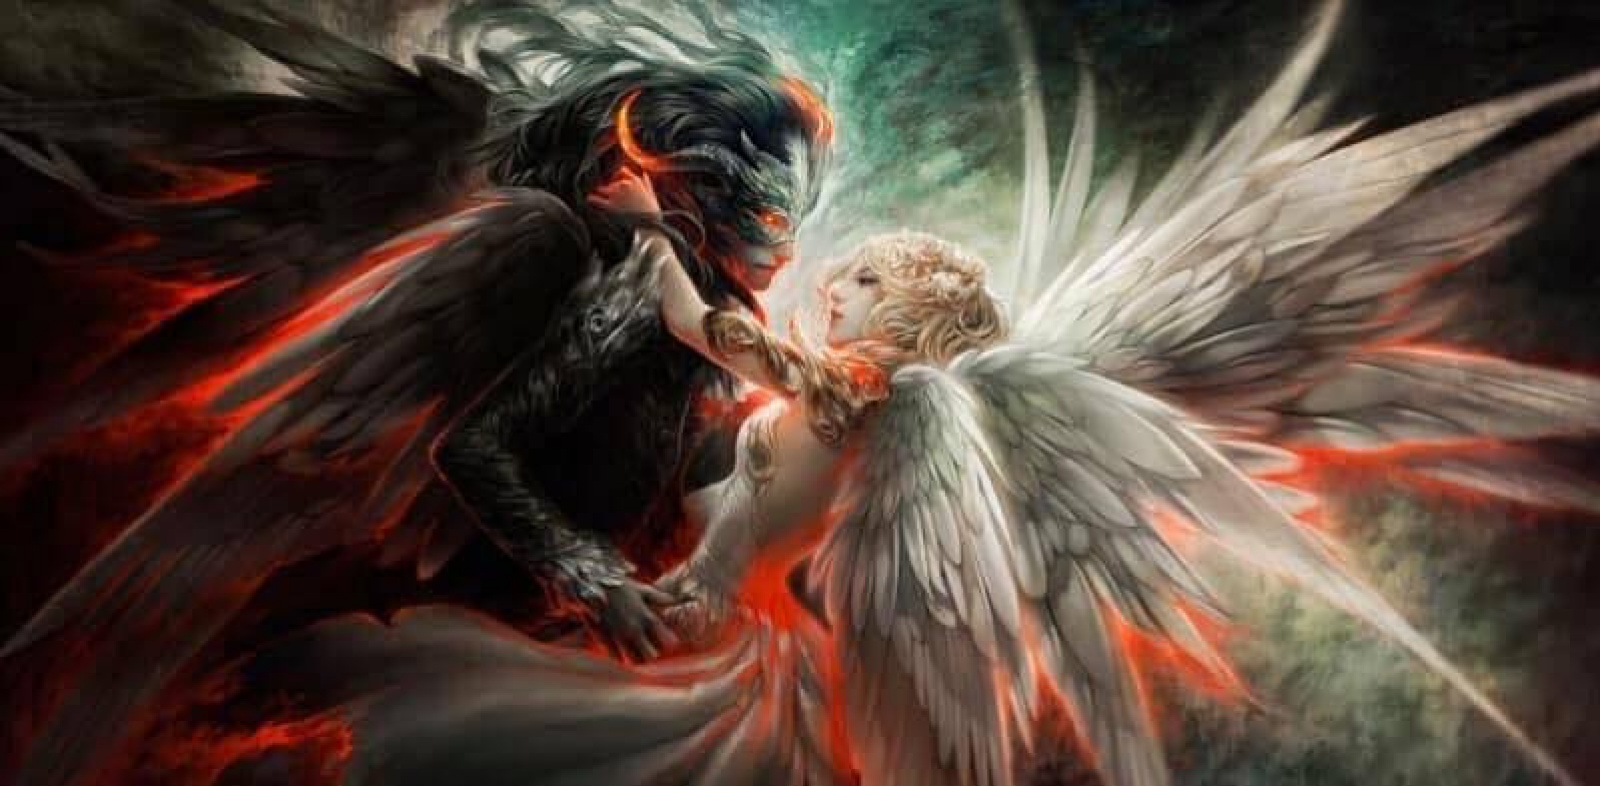 war between angels and demons